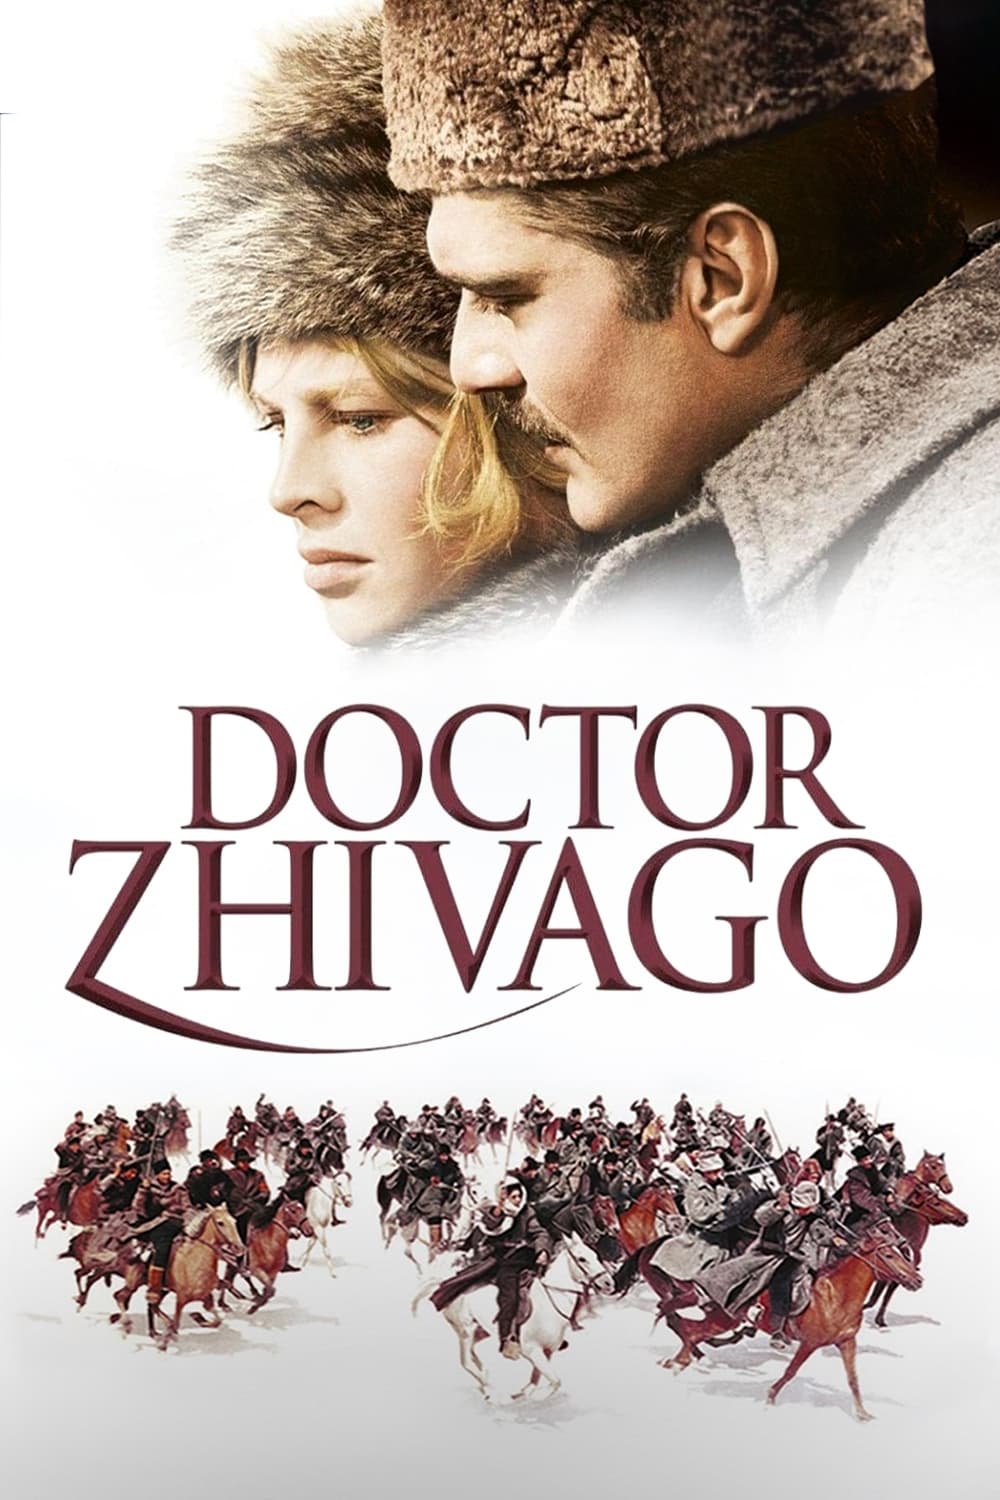 ดูหนังออนไลน์ฟรี Doctor Zhivago ด็อกเตอร์ชิวาโก